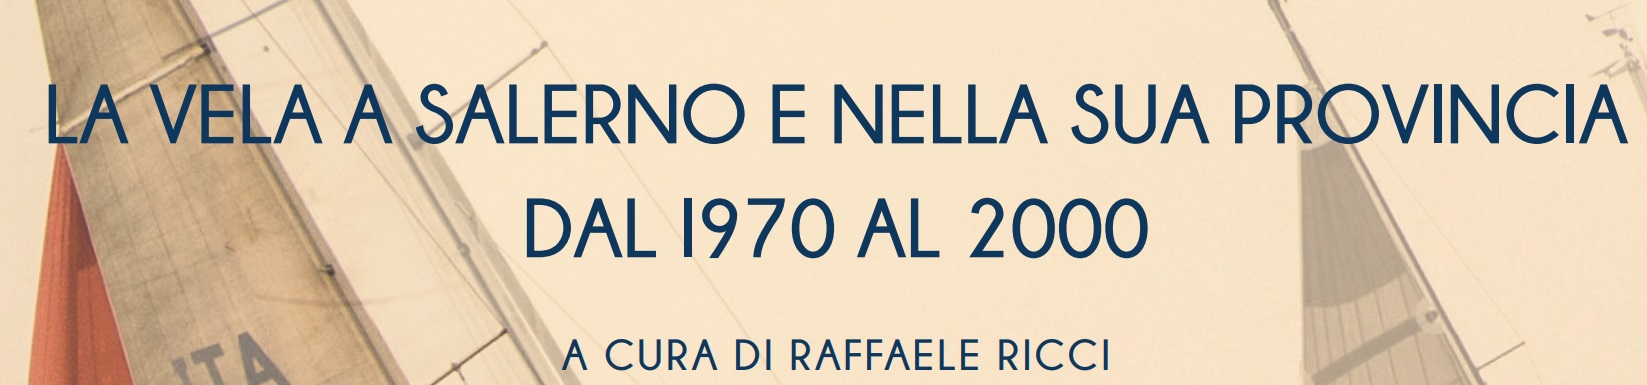 La vela a Salerno e nella sua provincia dal 1997 al 2000